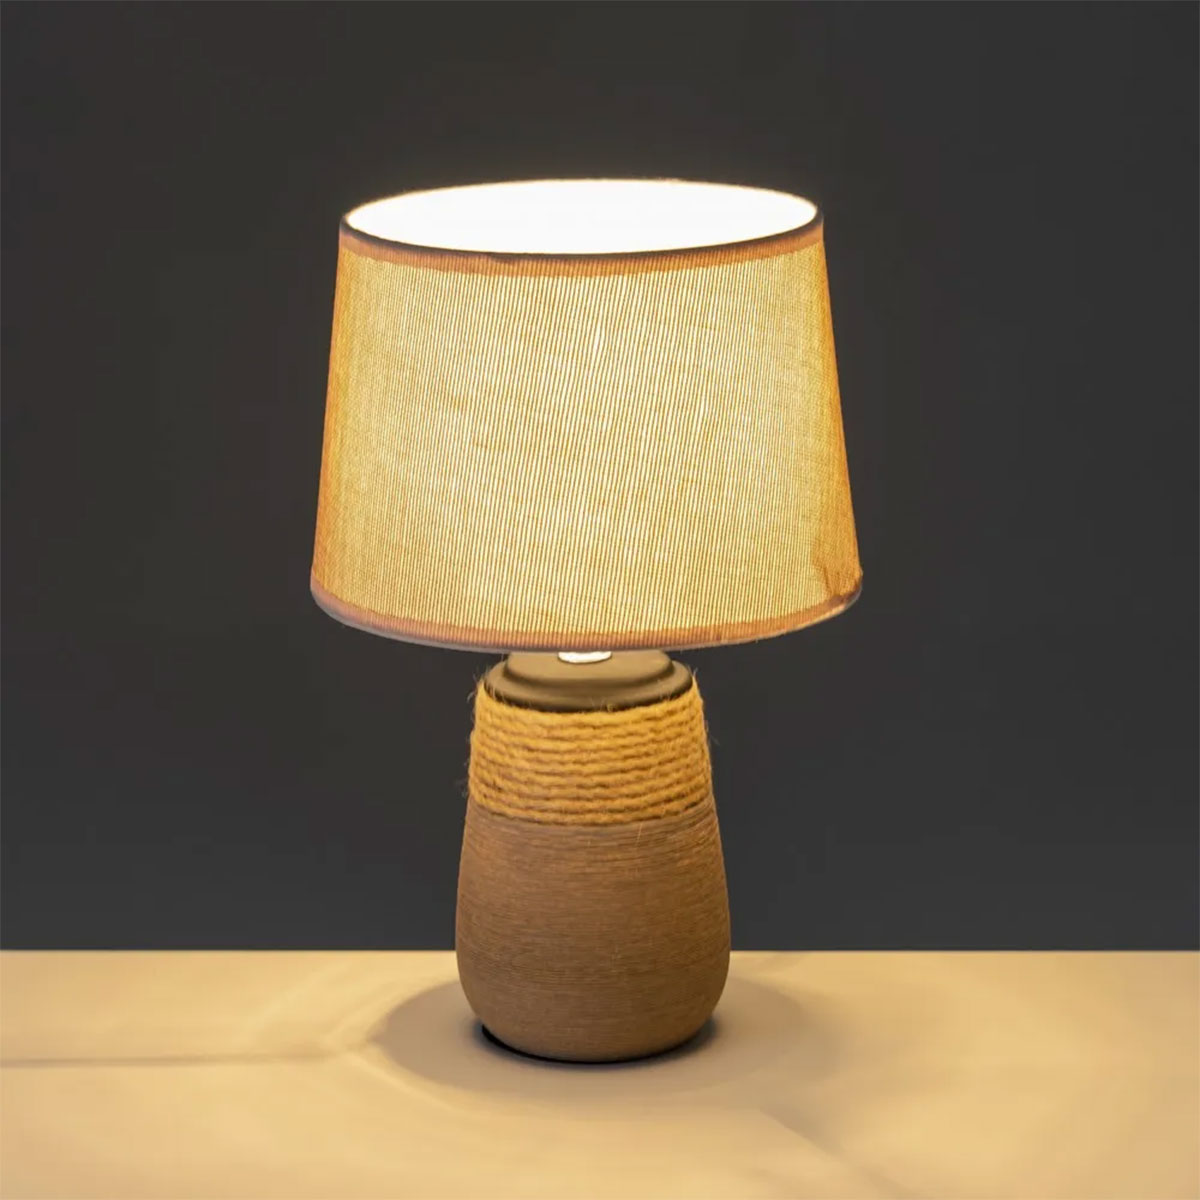 Ceramic lamp and rope 30 cm